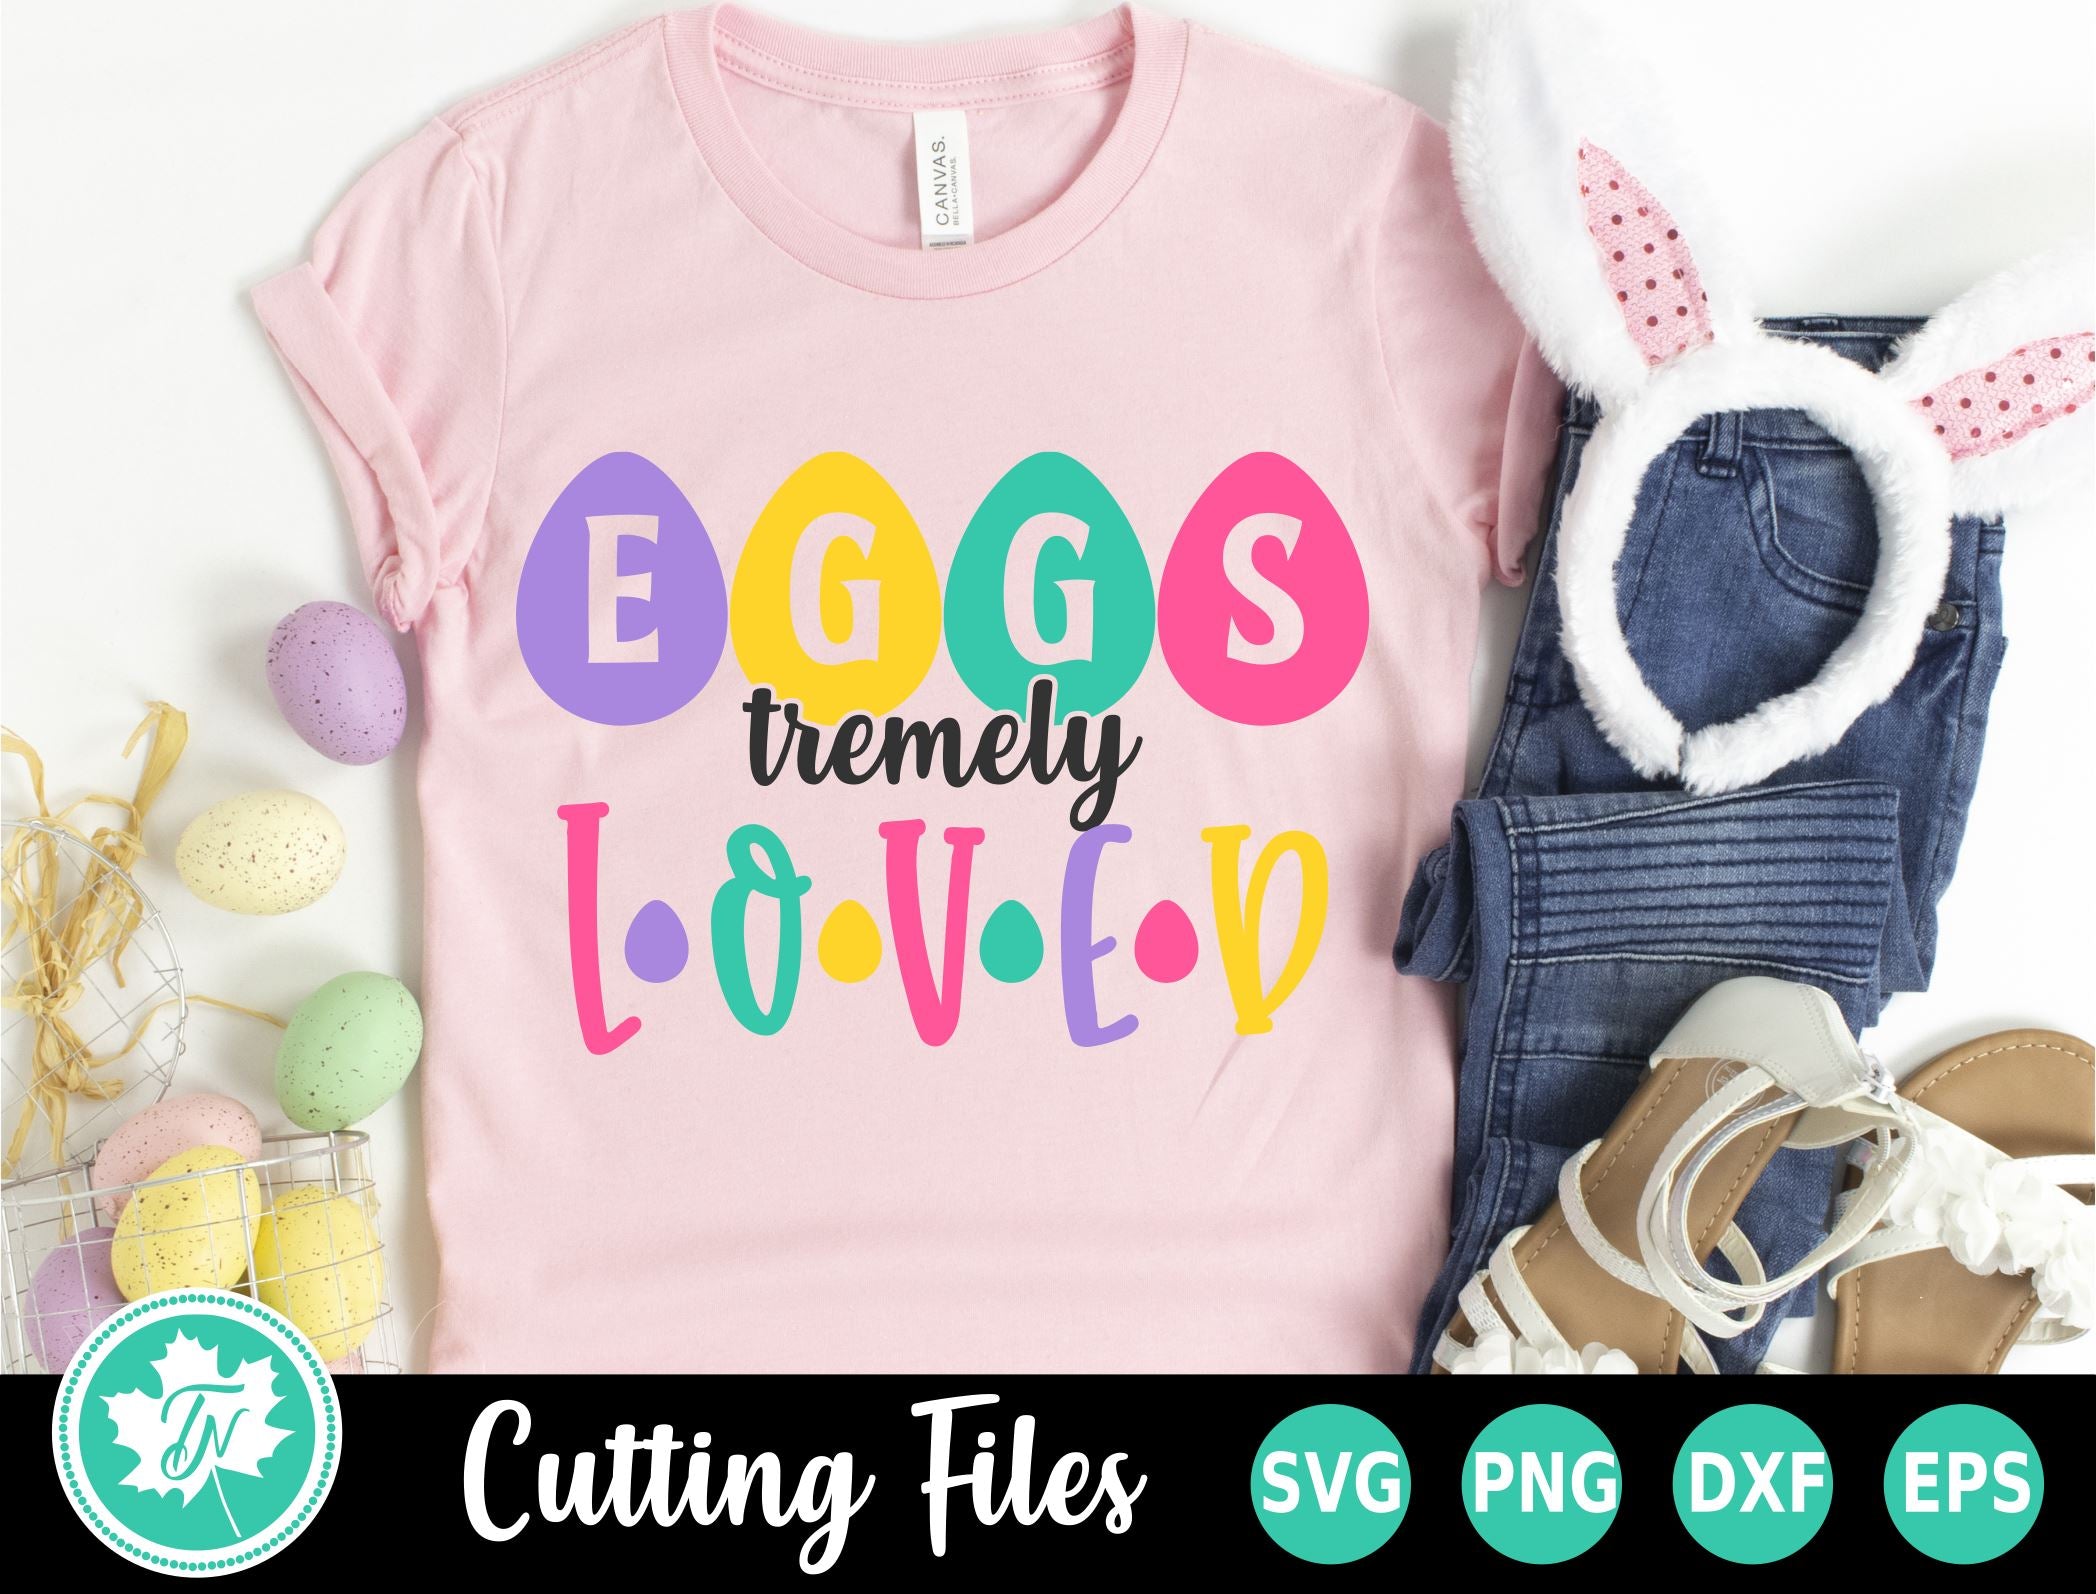 Download Easter Svg Easter Shirt Svg Egg Stremly Loved So Fontsy